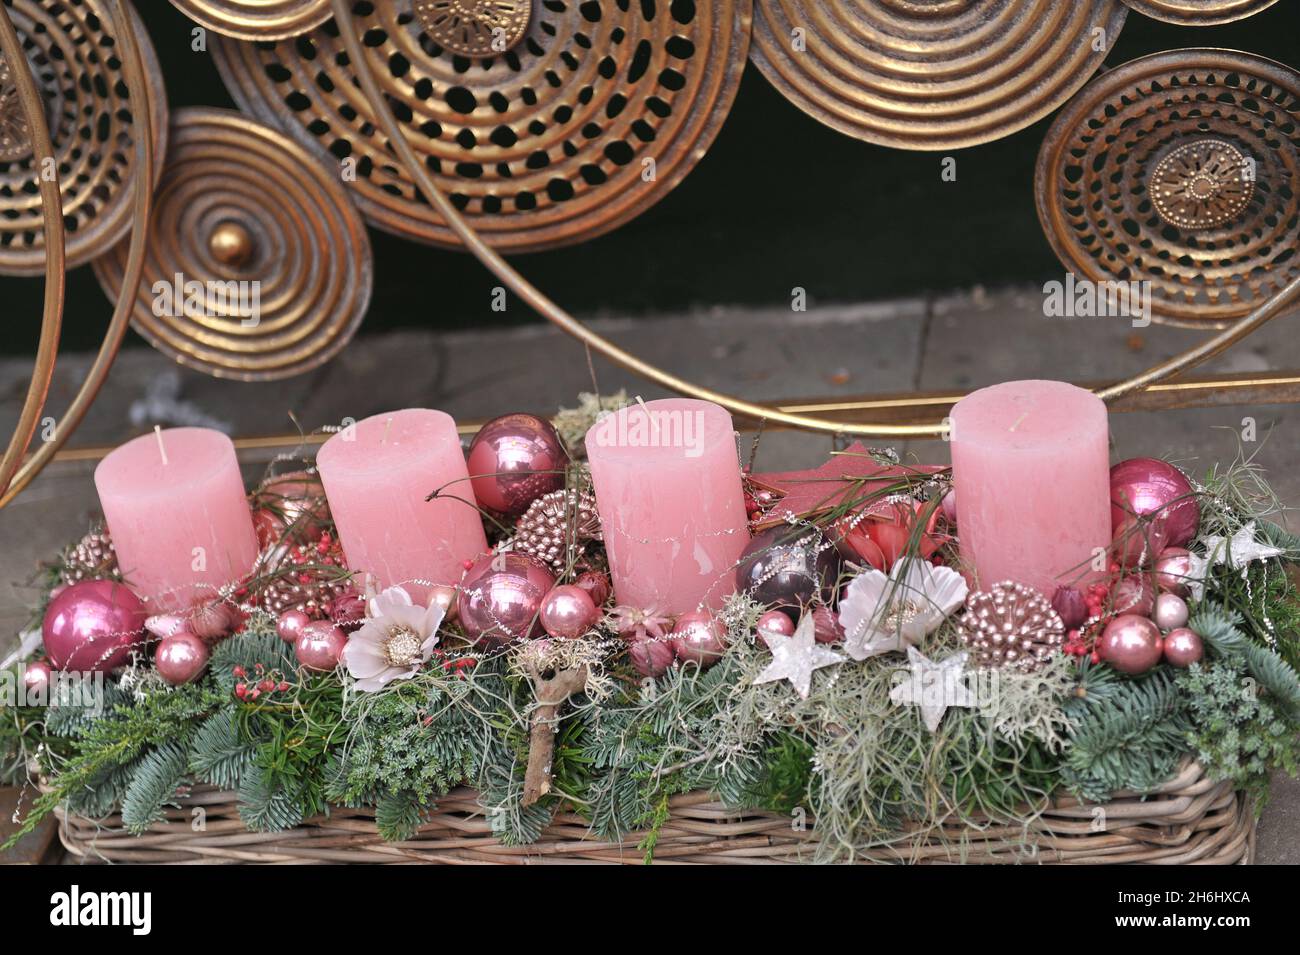 Décoration de Noël à l'intérieur.Une couronne de l'Avent avec quatre bougies roses Banque D'Images